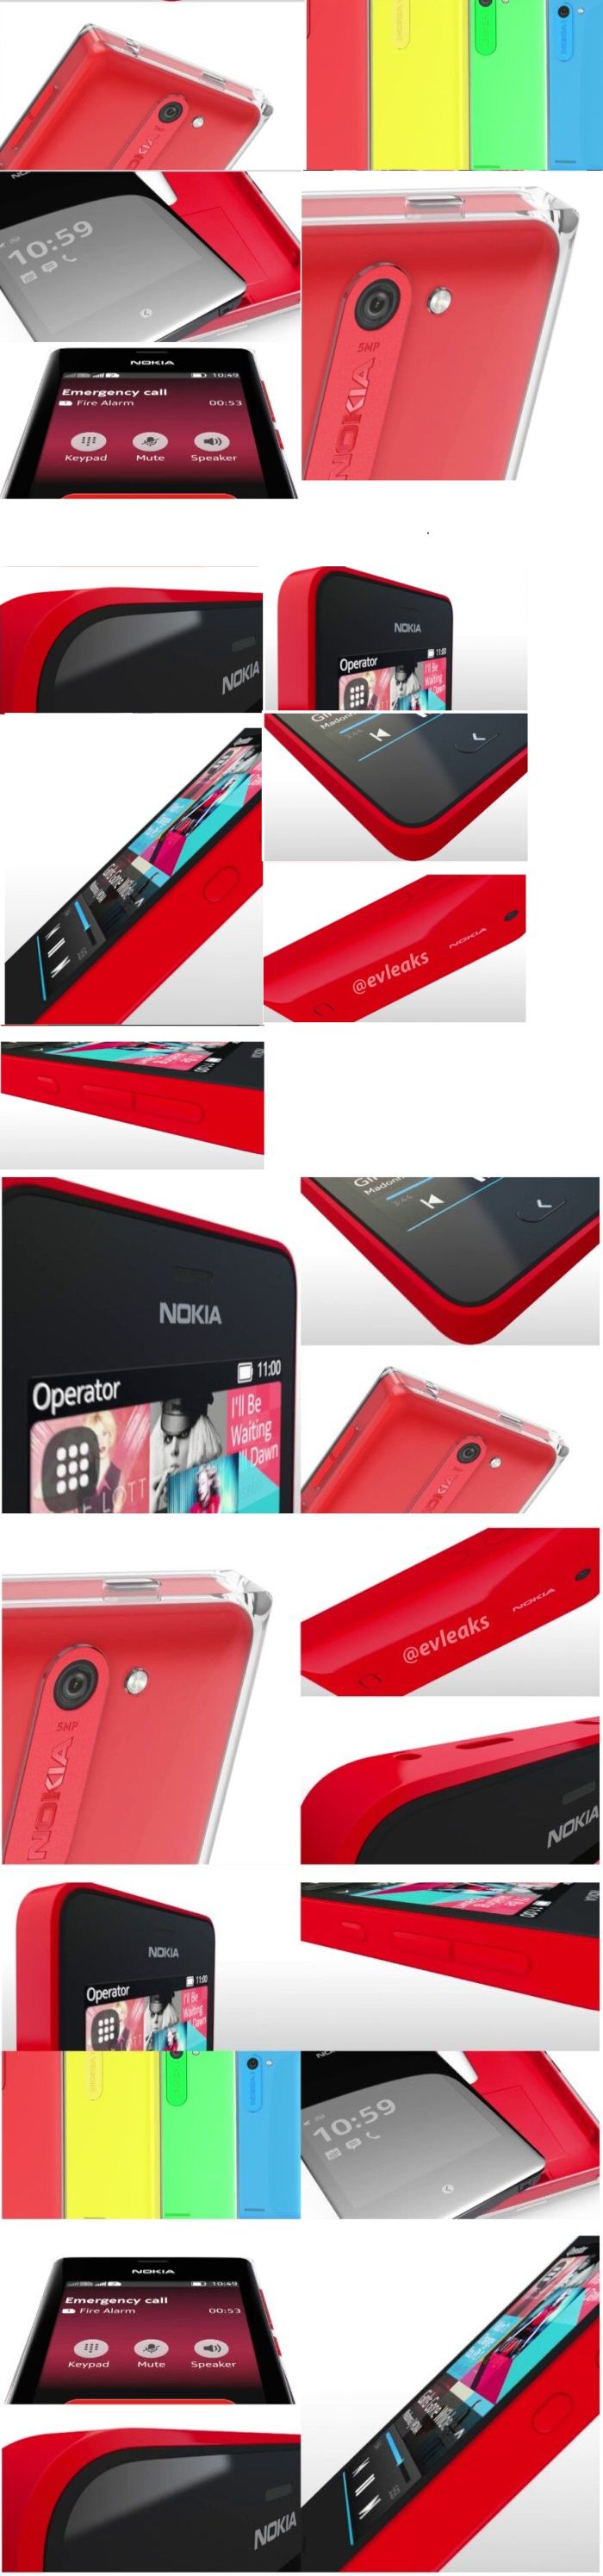 Nokia Asha mobilok hajlított üveggel